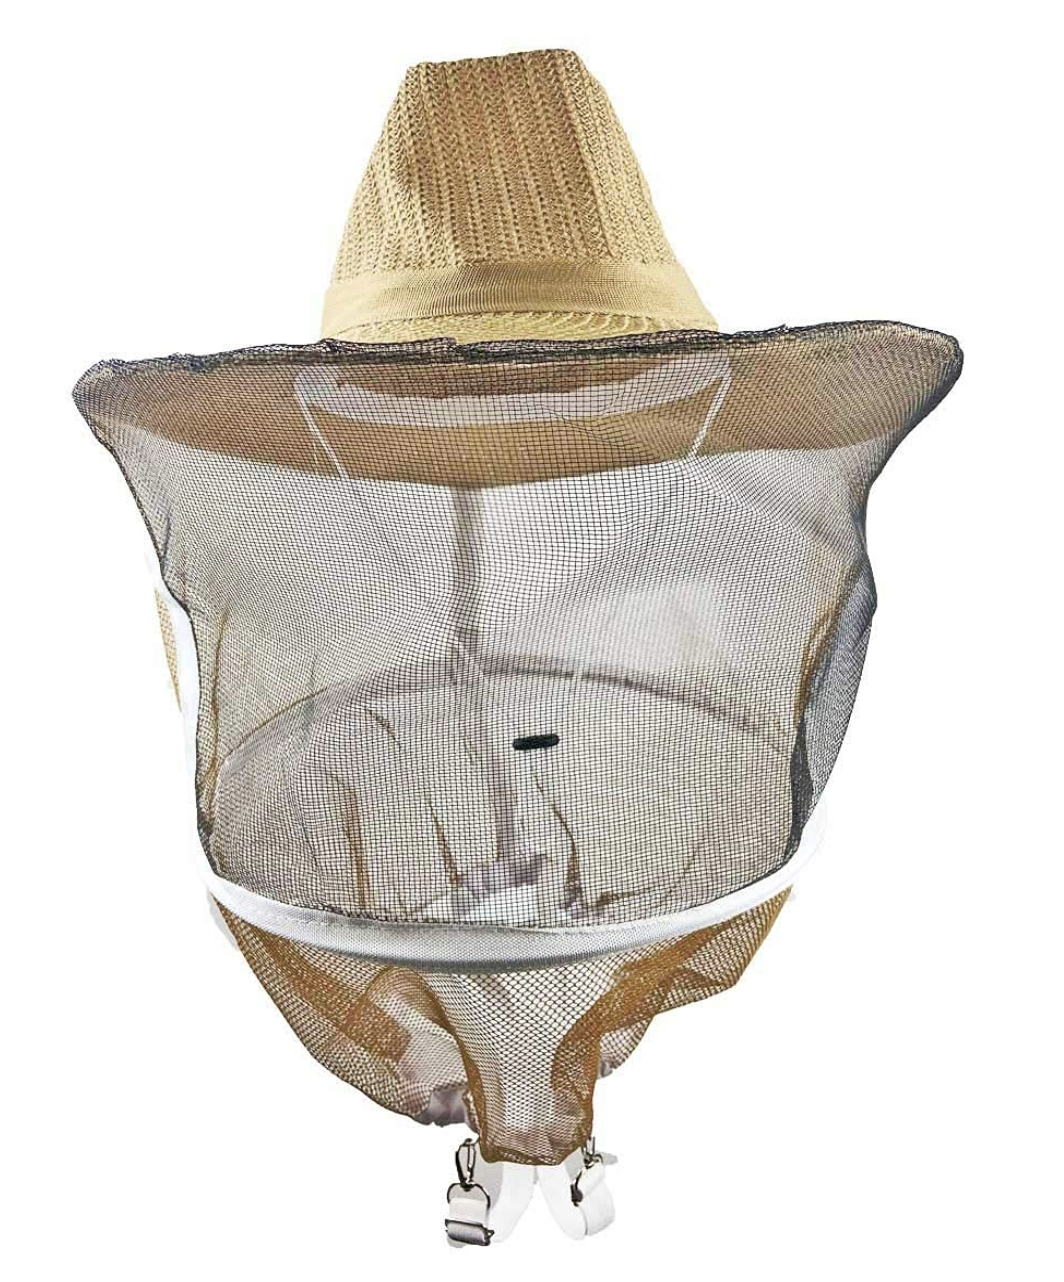 Beekeeping Cowboy Hat Style Veil